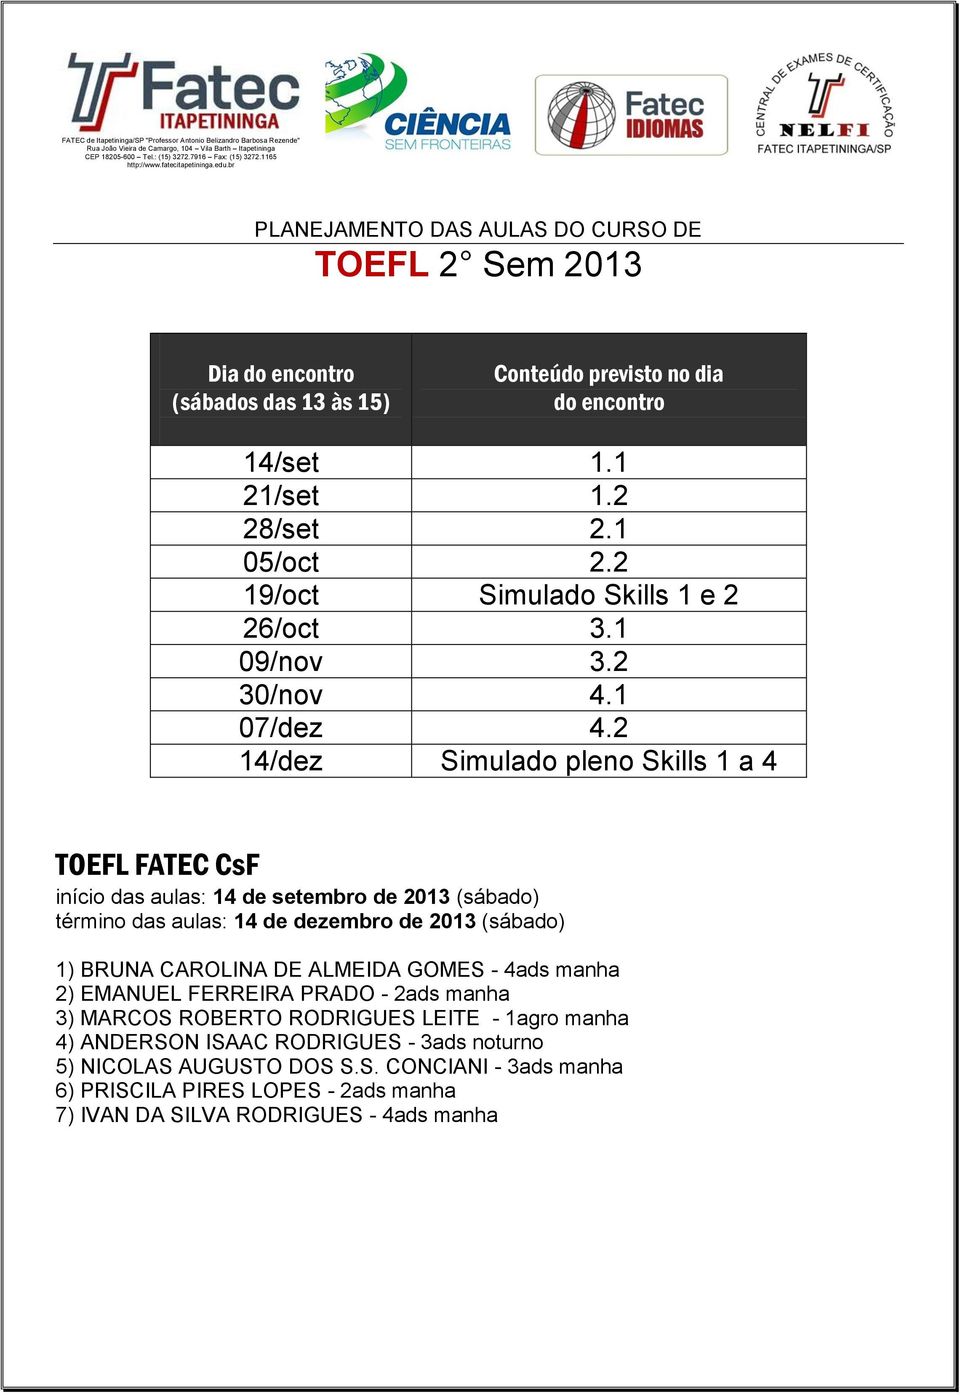 2 14/dez Simulado pleno Skills 1 a 4 TOEFL FATEC CsF início das aulas: 14 de setembro de 2013 (sábado) término das aulas: 14 de dezembro de 2013 (sábado)